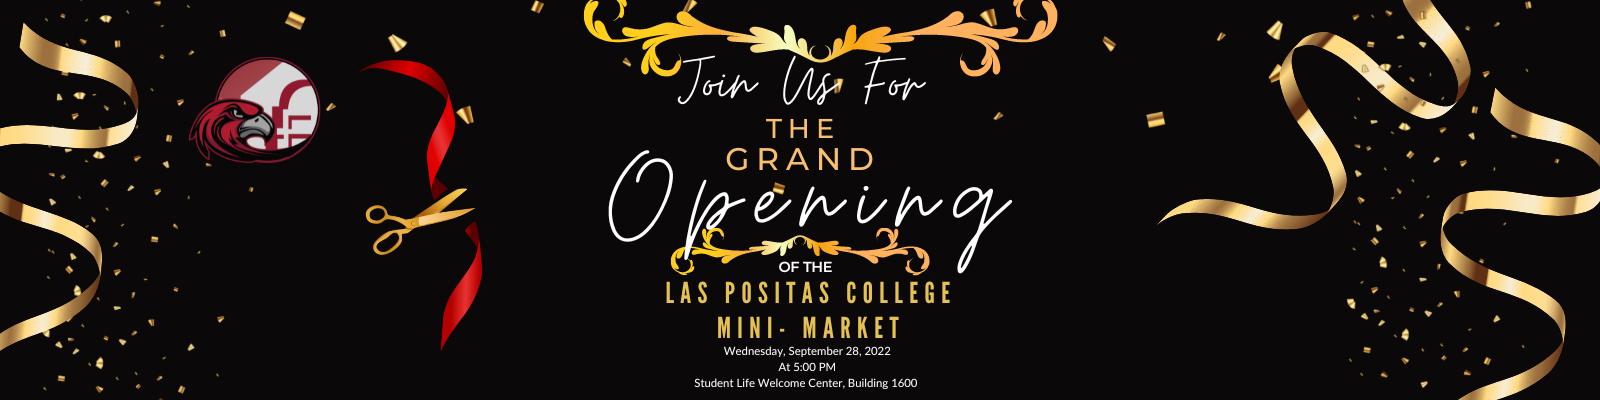 Grand Opening of the Las Positas College Mini-Market